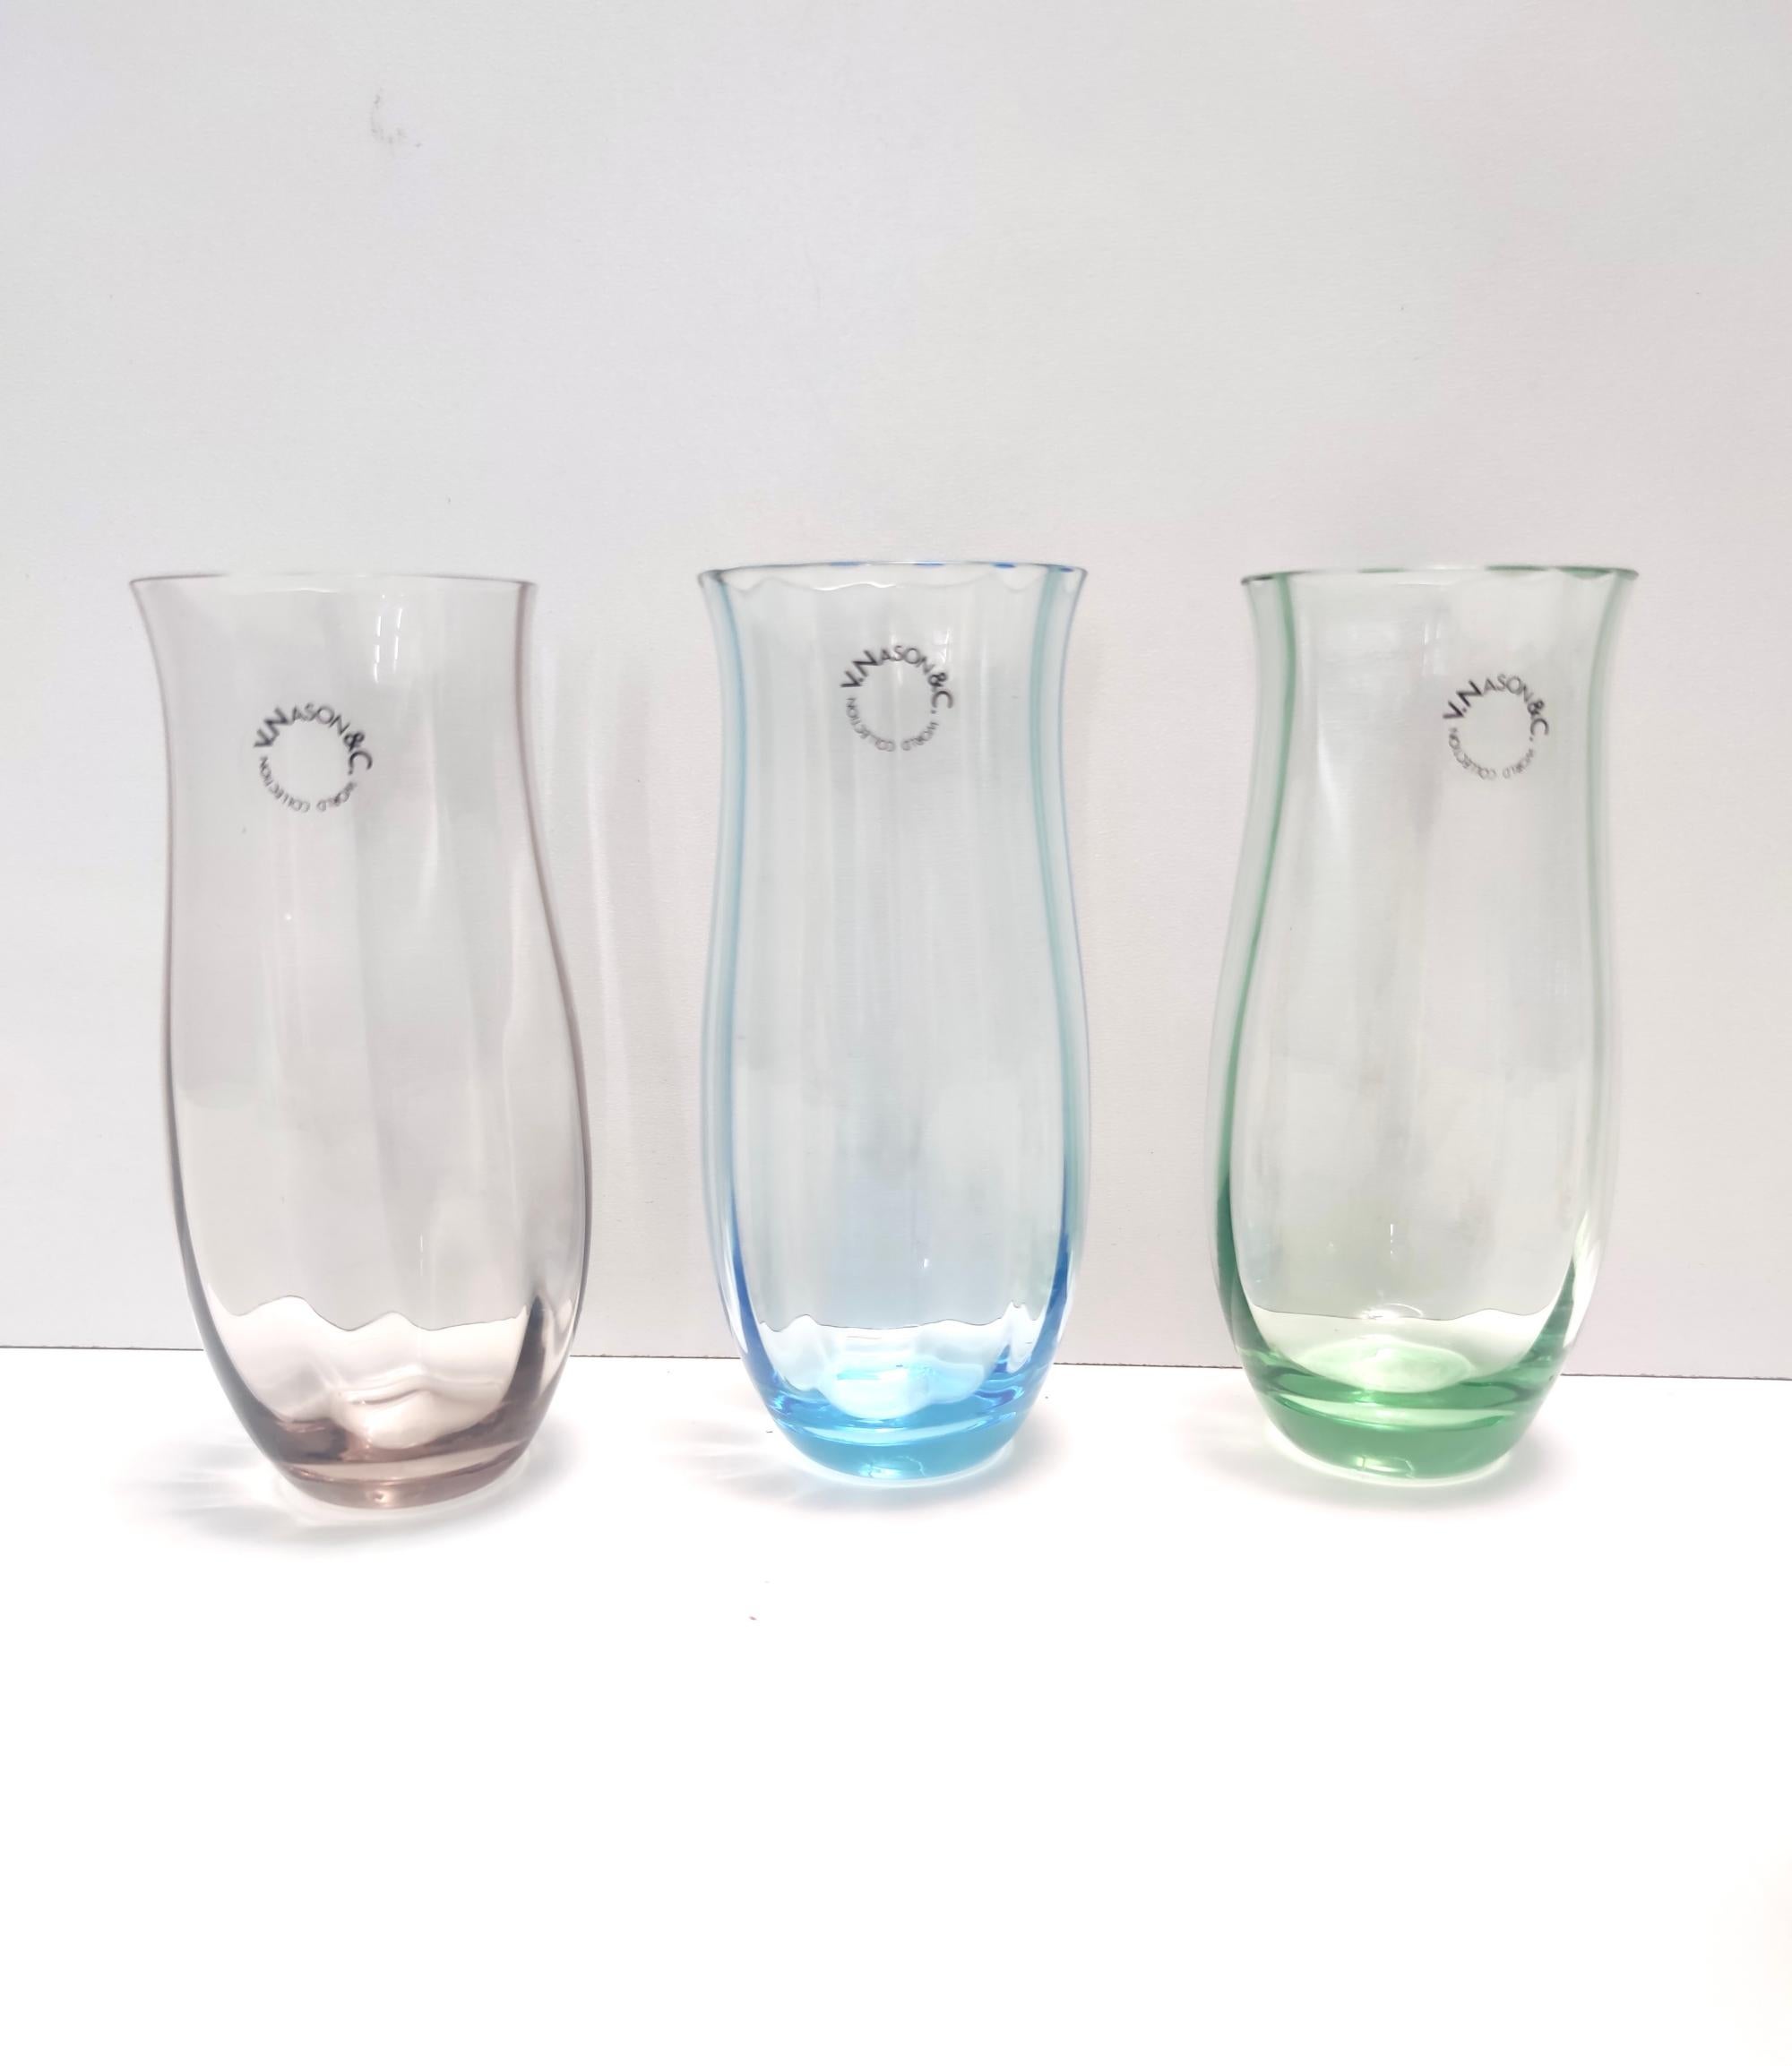 Fabriqué en Italie, années 1990.
Ce set de six verres est fabriqué en verre de Murano, dont l'intérieur est strié et l'extérieur est lisse.
Il s'agit d'un ensemble vintage, qui peut donc présenter de légères traces d'utilisation, mais qui peut être